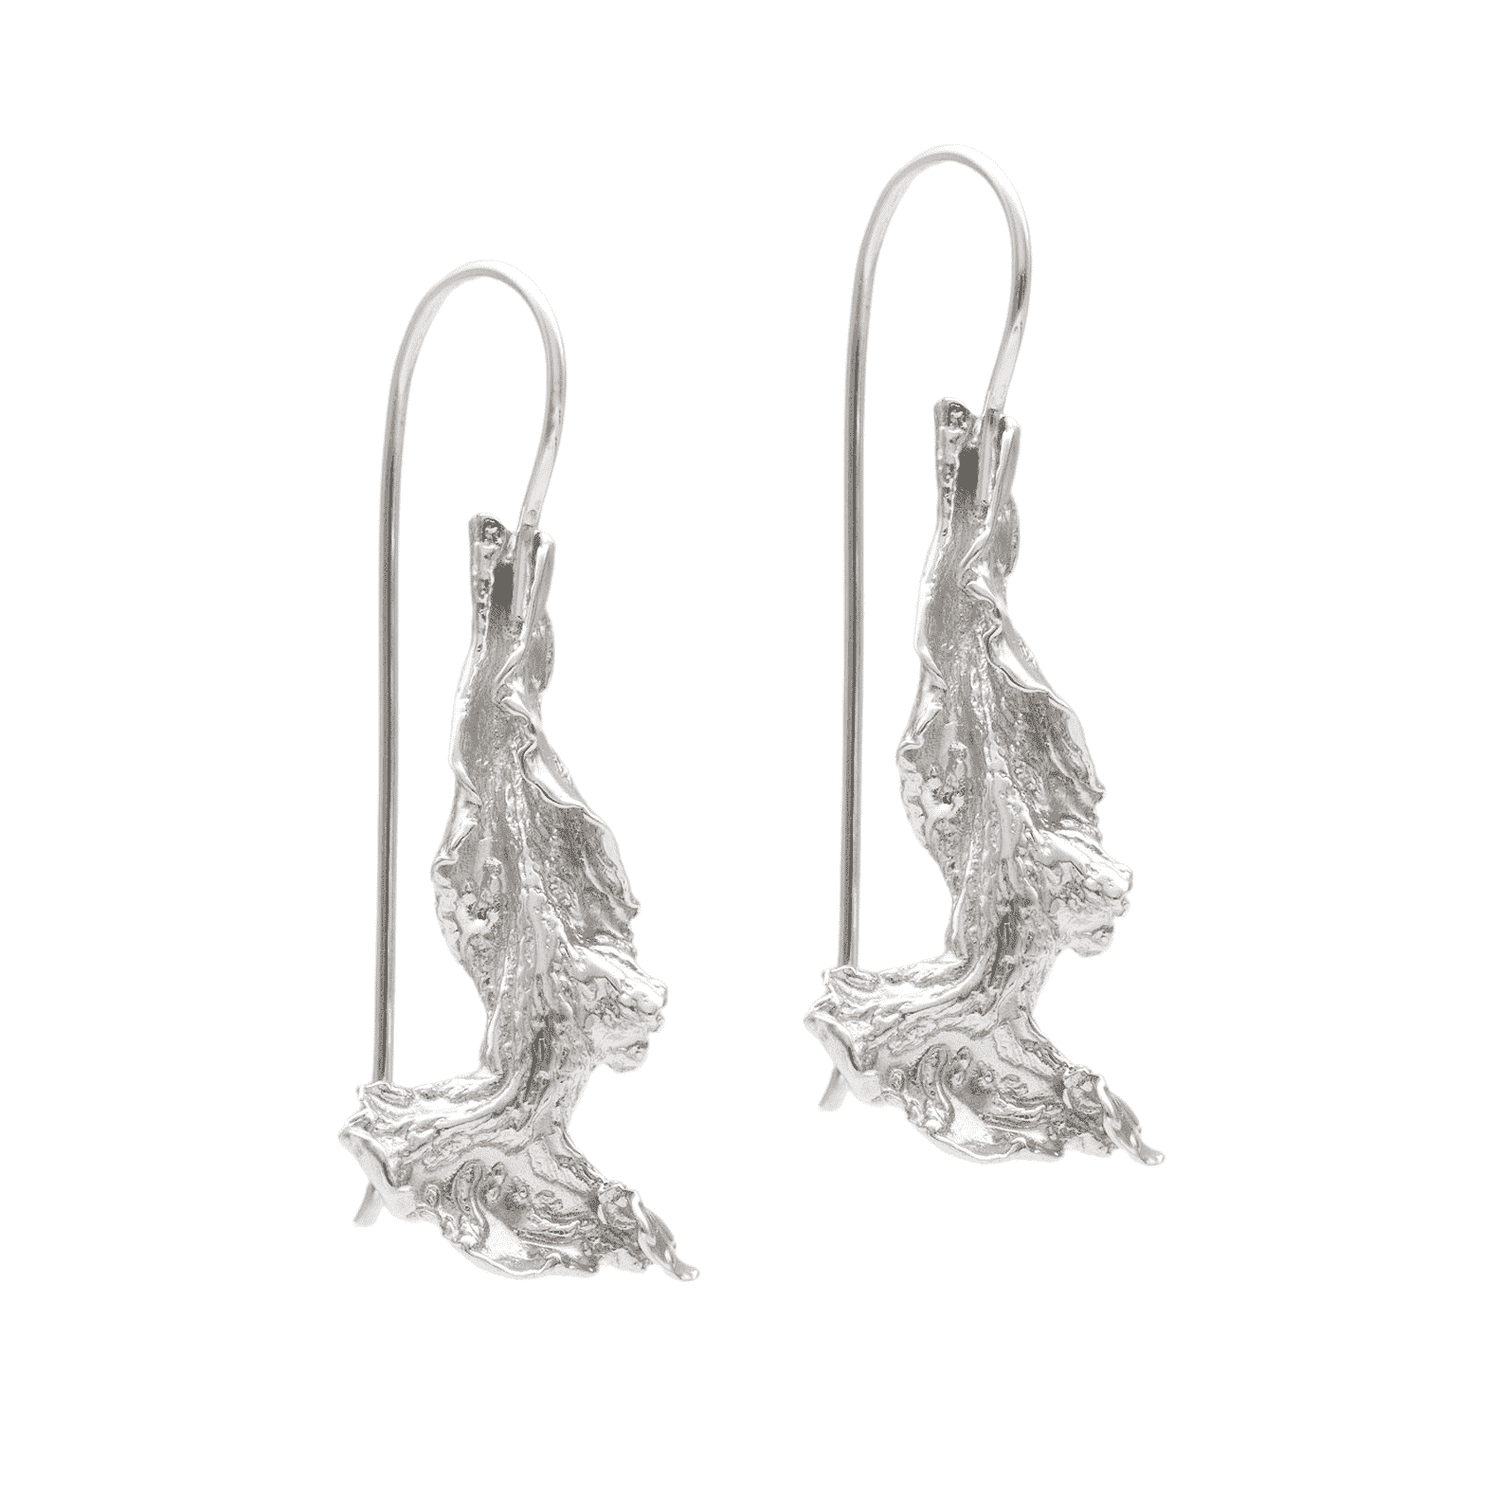 TÅNG (Seaweed) earrings